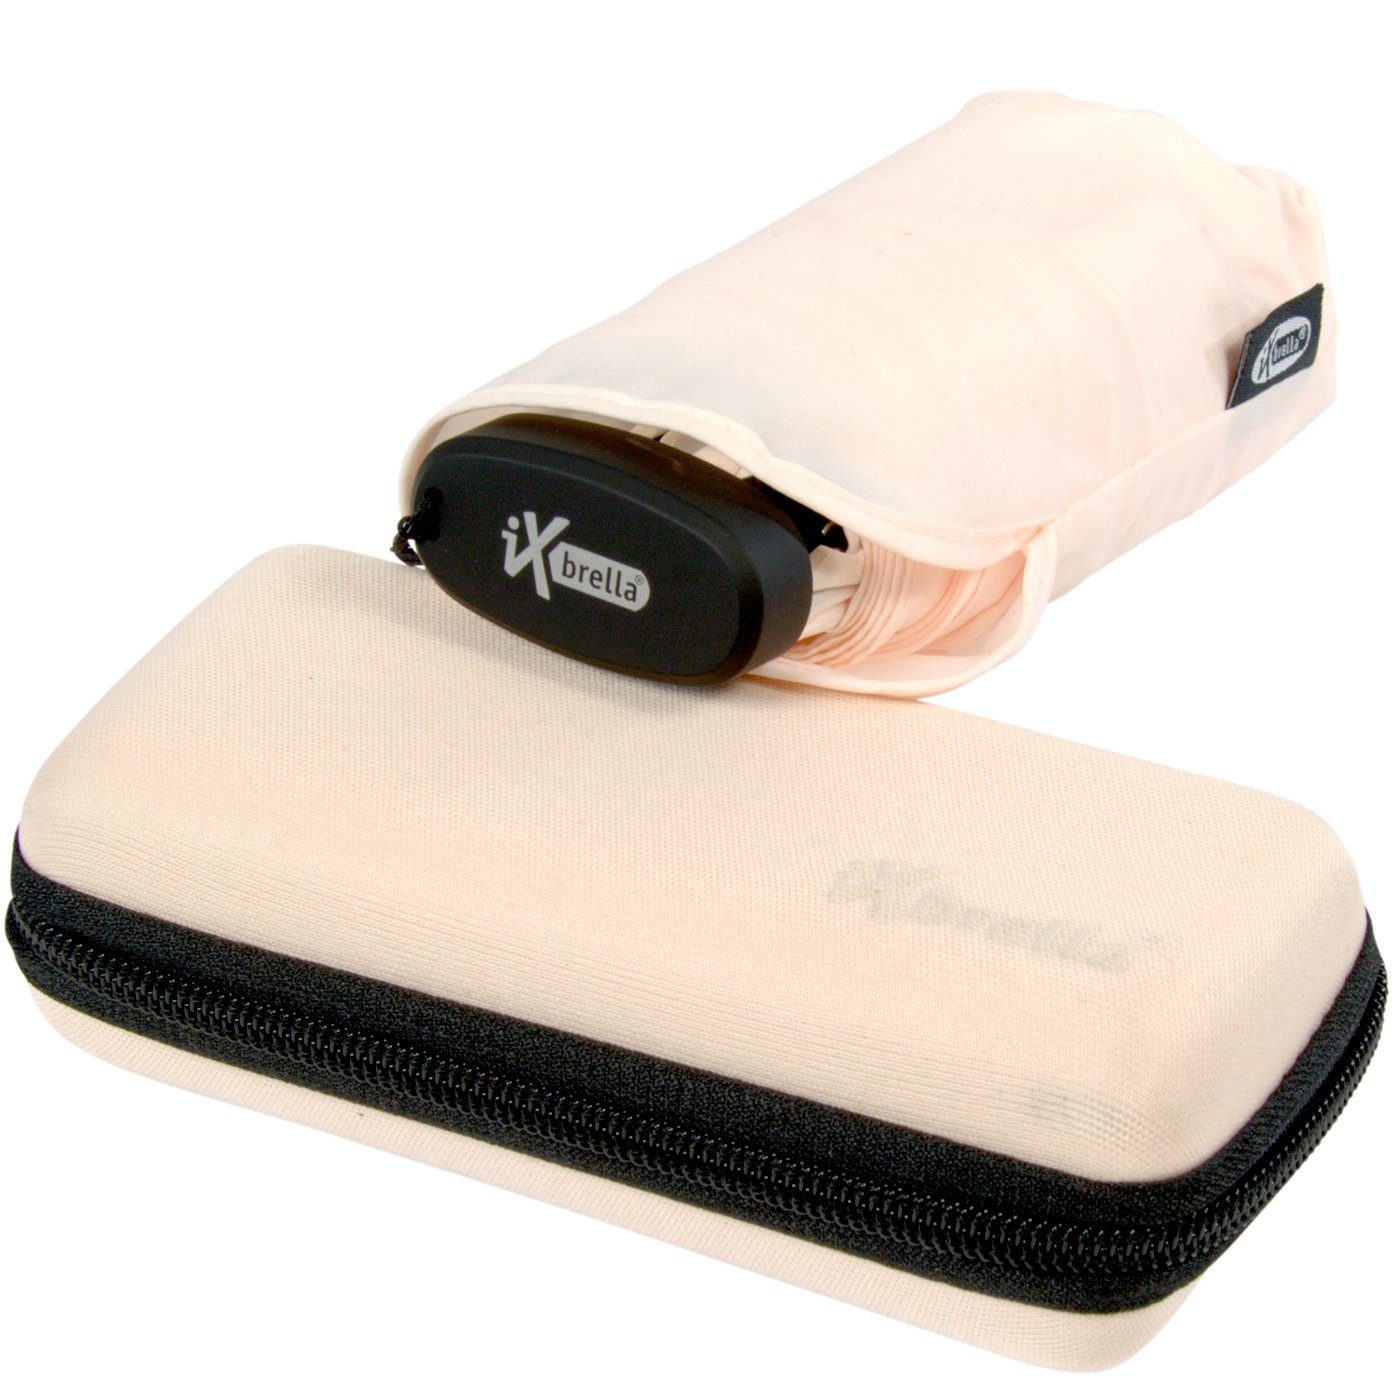 hellrosa Schirm Mini Softcase-Etui im 15 winziger Format, salt ultra-klein, iX-brella sea mit cm Handy Taschenregenschirm - Ultra